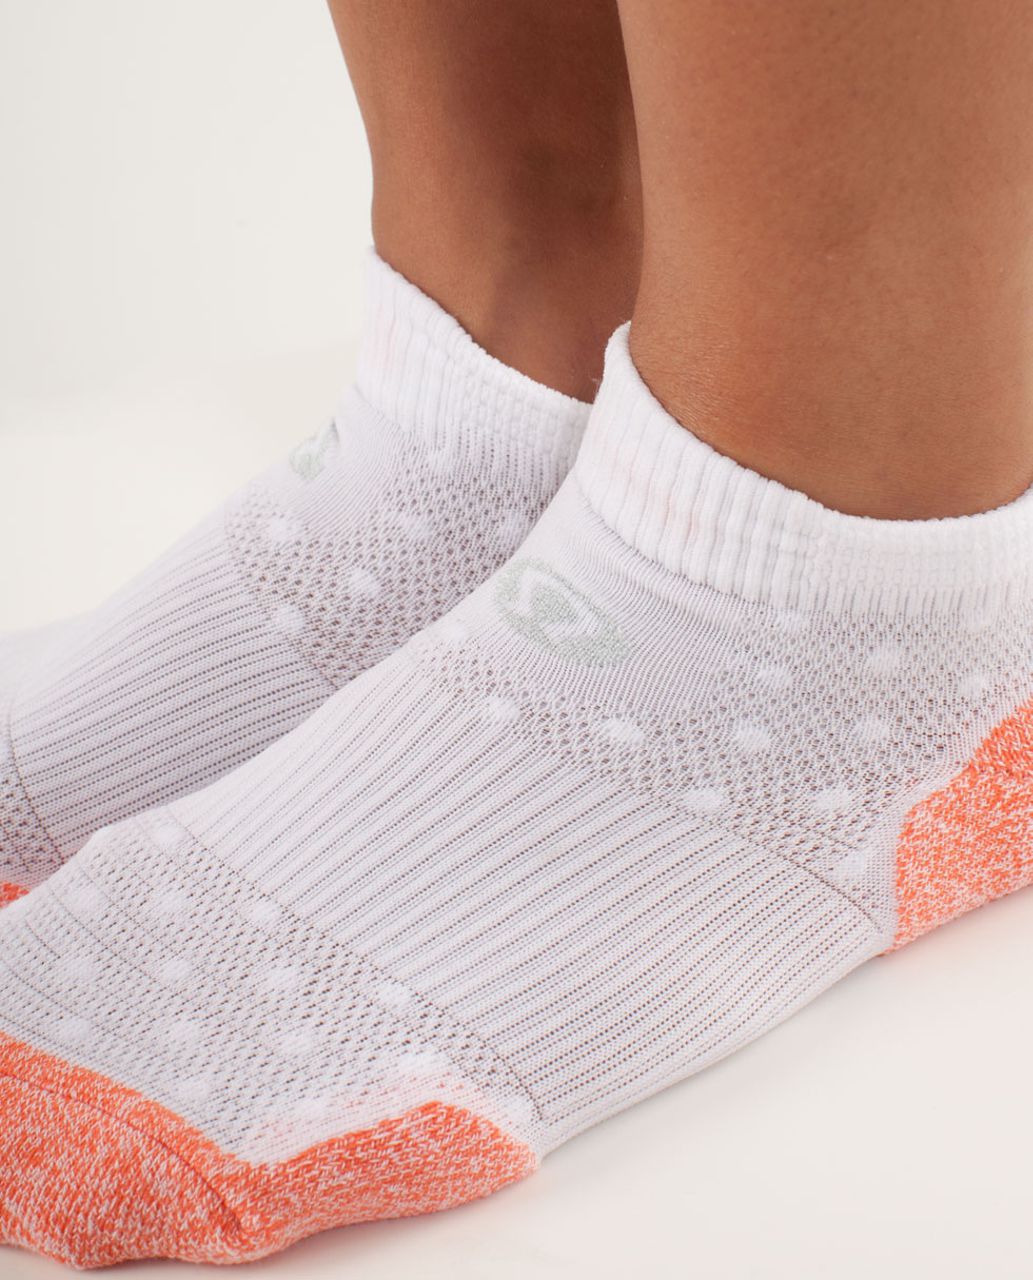 Lululemon Women's Ultimate Padded Run Sock - Pop Orange / White White High Noon Dot